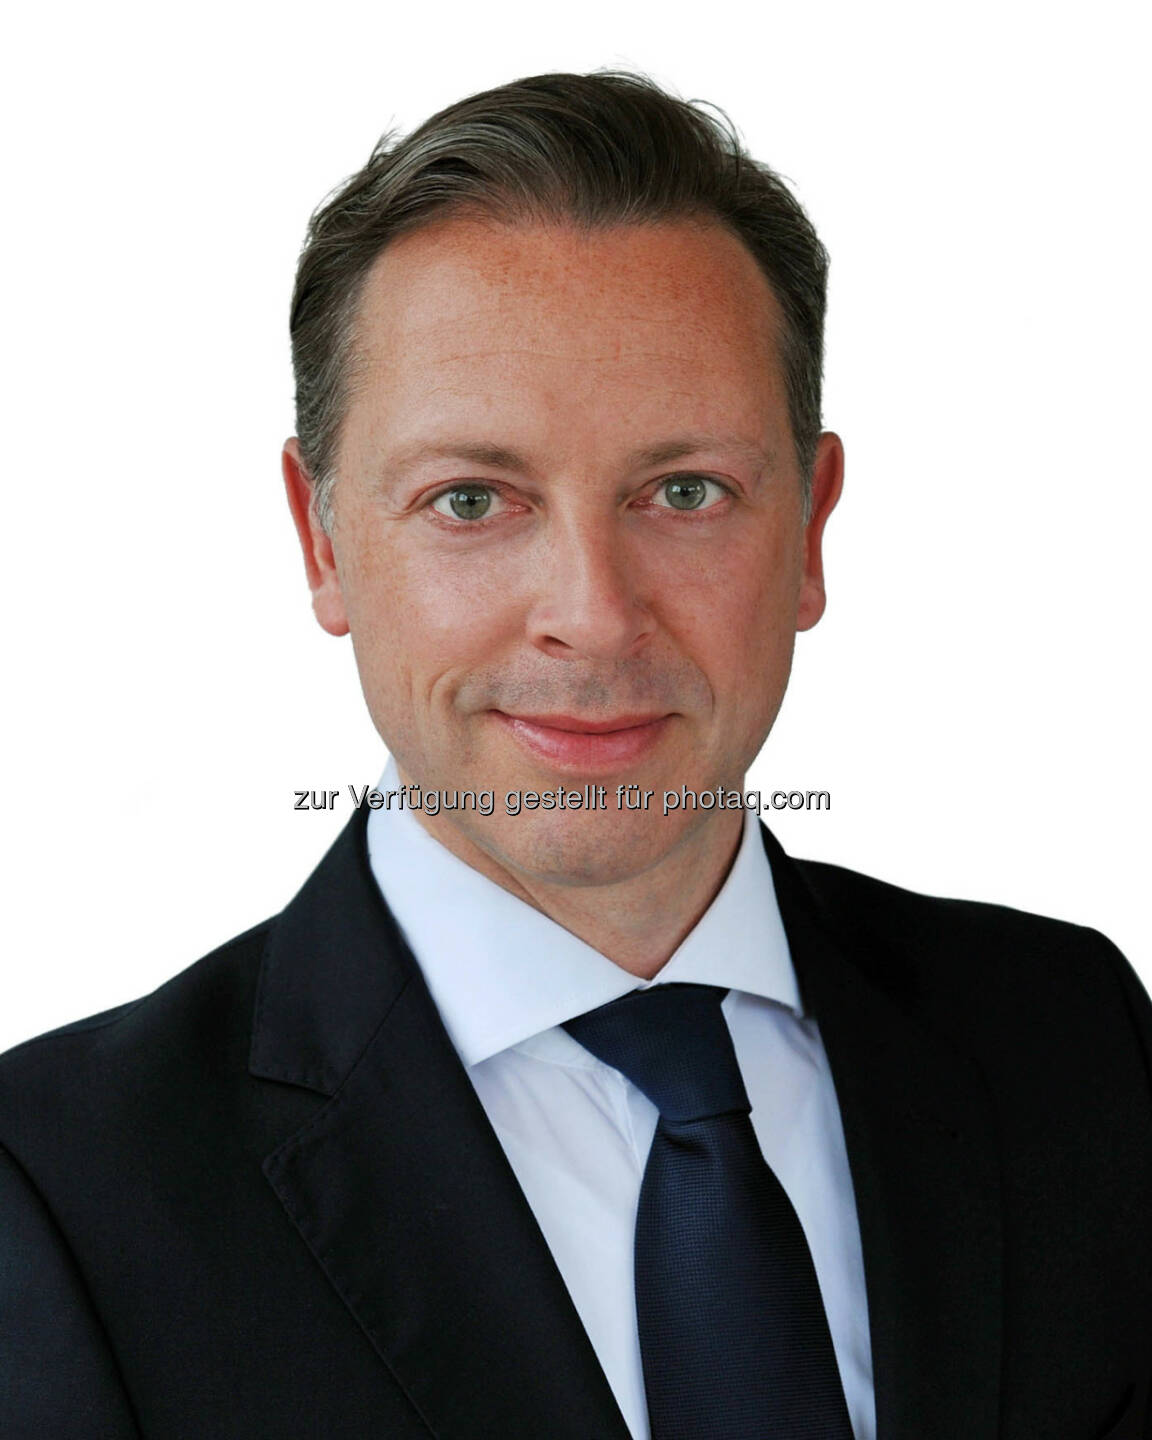 Stefan Becker, Senior Vice President Neuberger Berman in Frankfurt